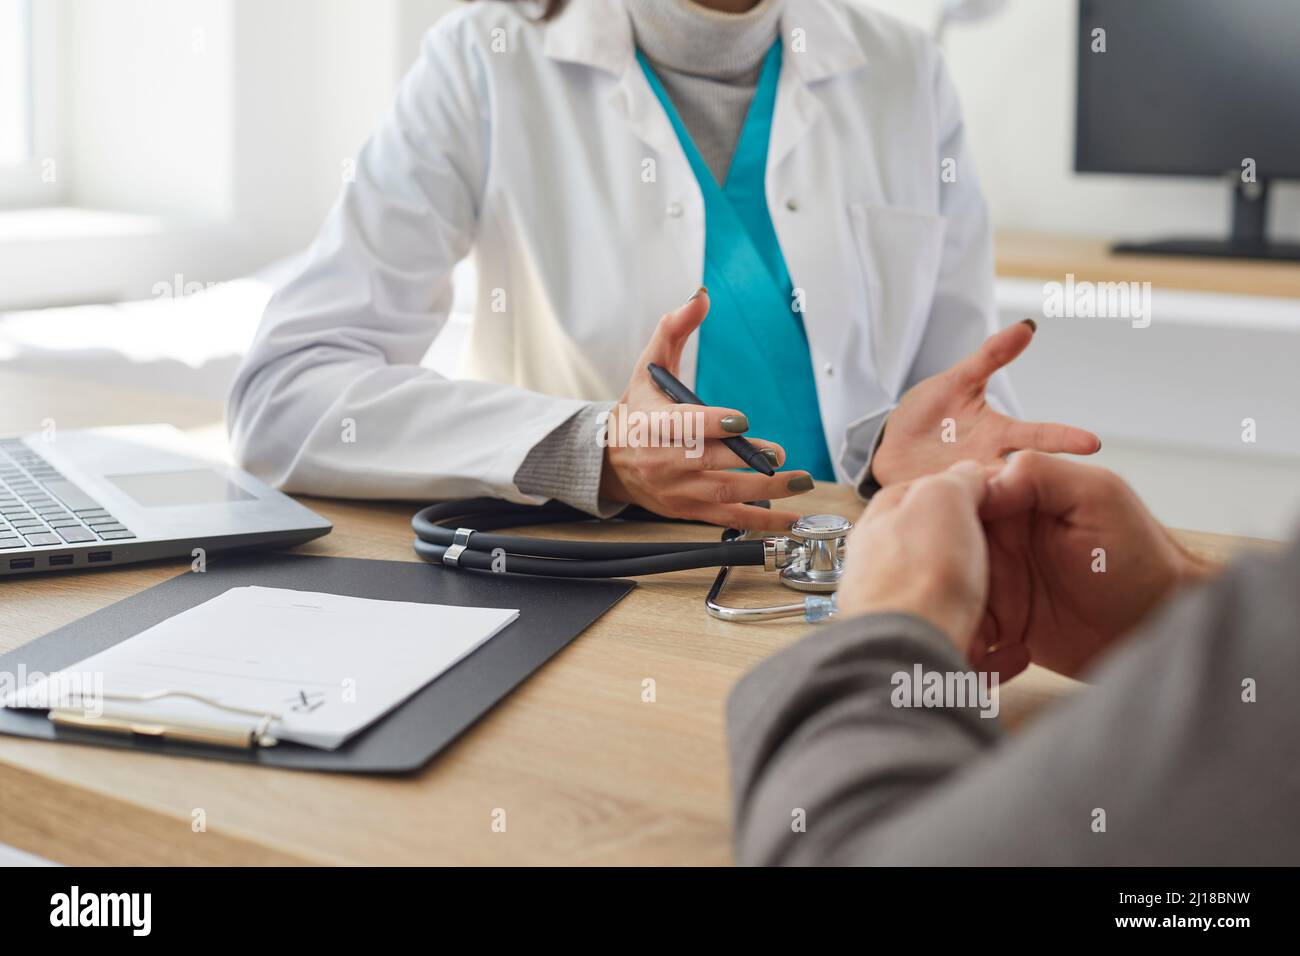 Hände eines unbekannten Arztes und Patienten, die während eines Arzttermins sprechen und die Diagnose besprechen. Stockfoto